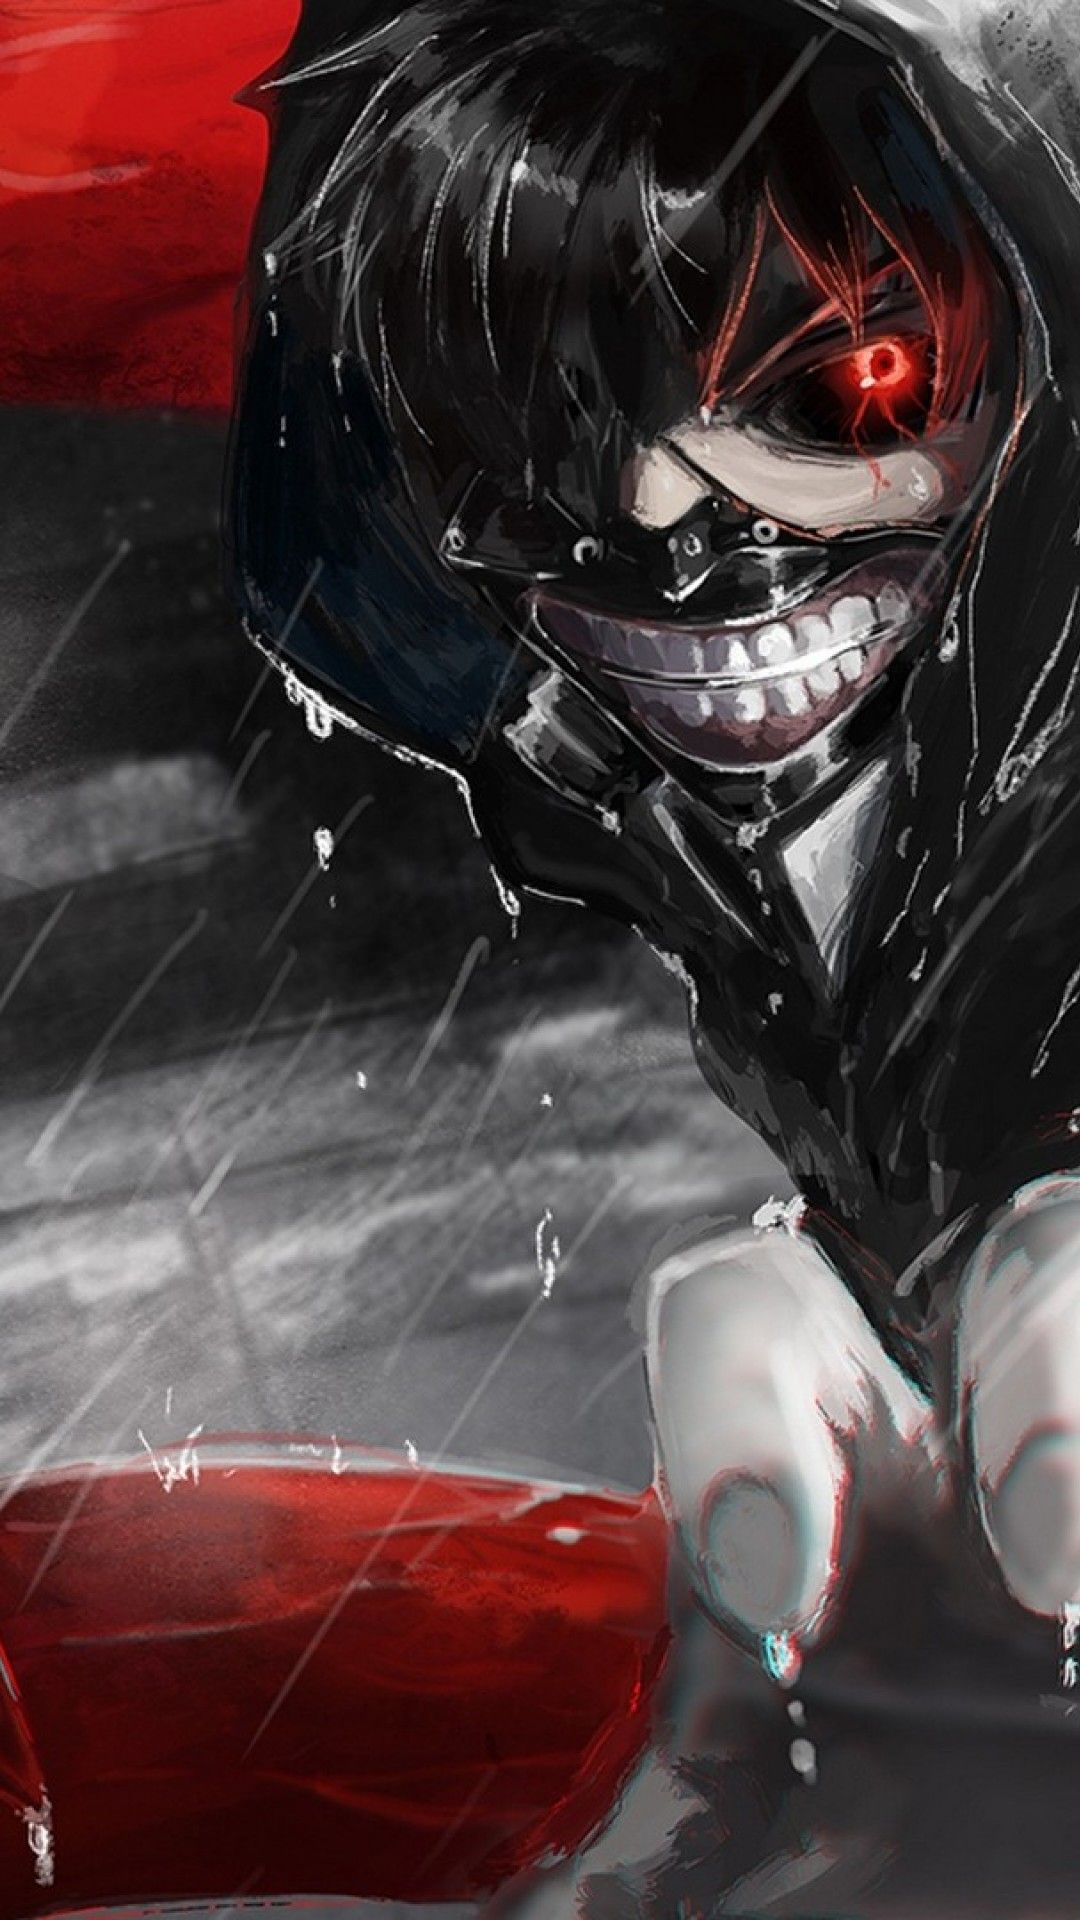 tokyo ghoul fond d'écran 1080x1920,casque,équipement de protection individuelle,personnage fictif,supervillain,cheveux noirs